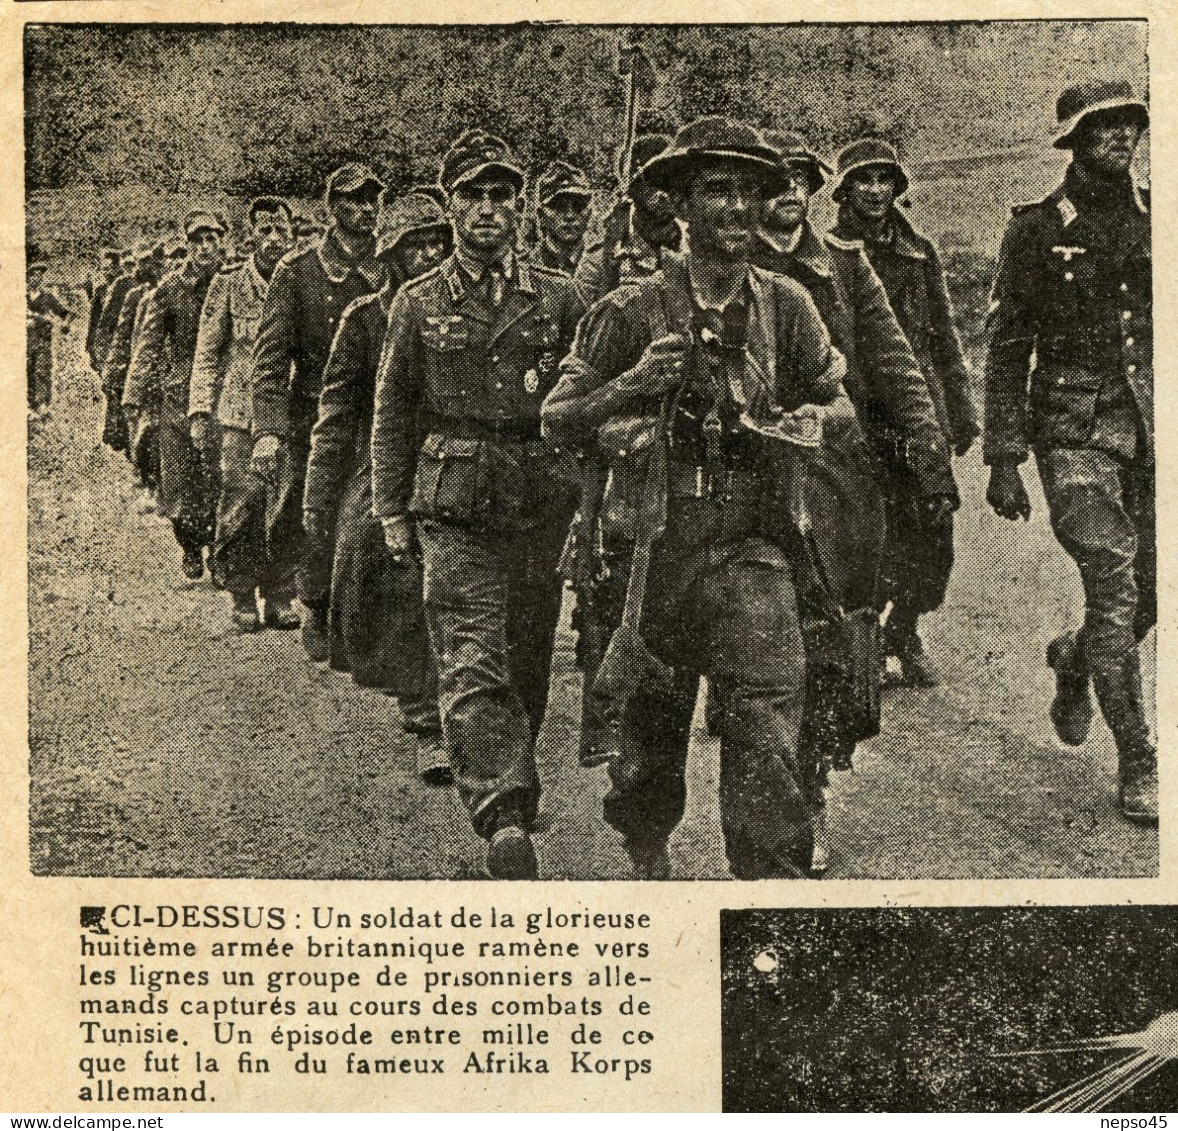 Journal.Organe des Mouvements de Résistance Uni.Edition Zone Sud.année 1943.Libération Numéro spécial.Propagande Alliés.